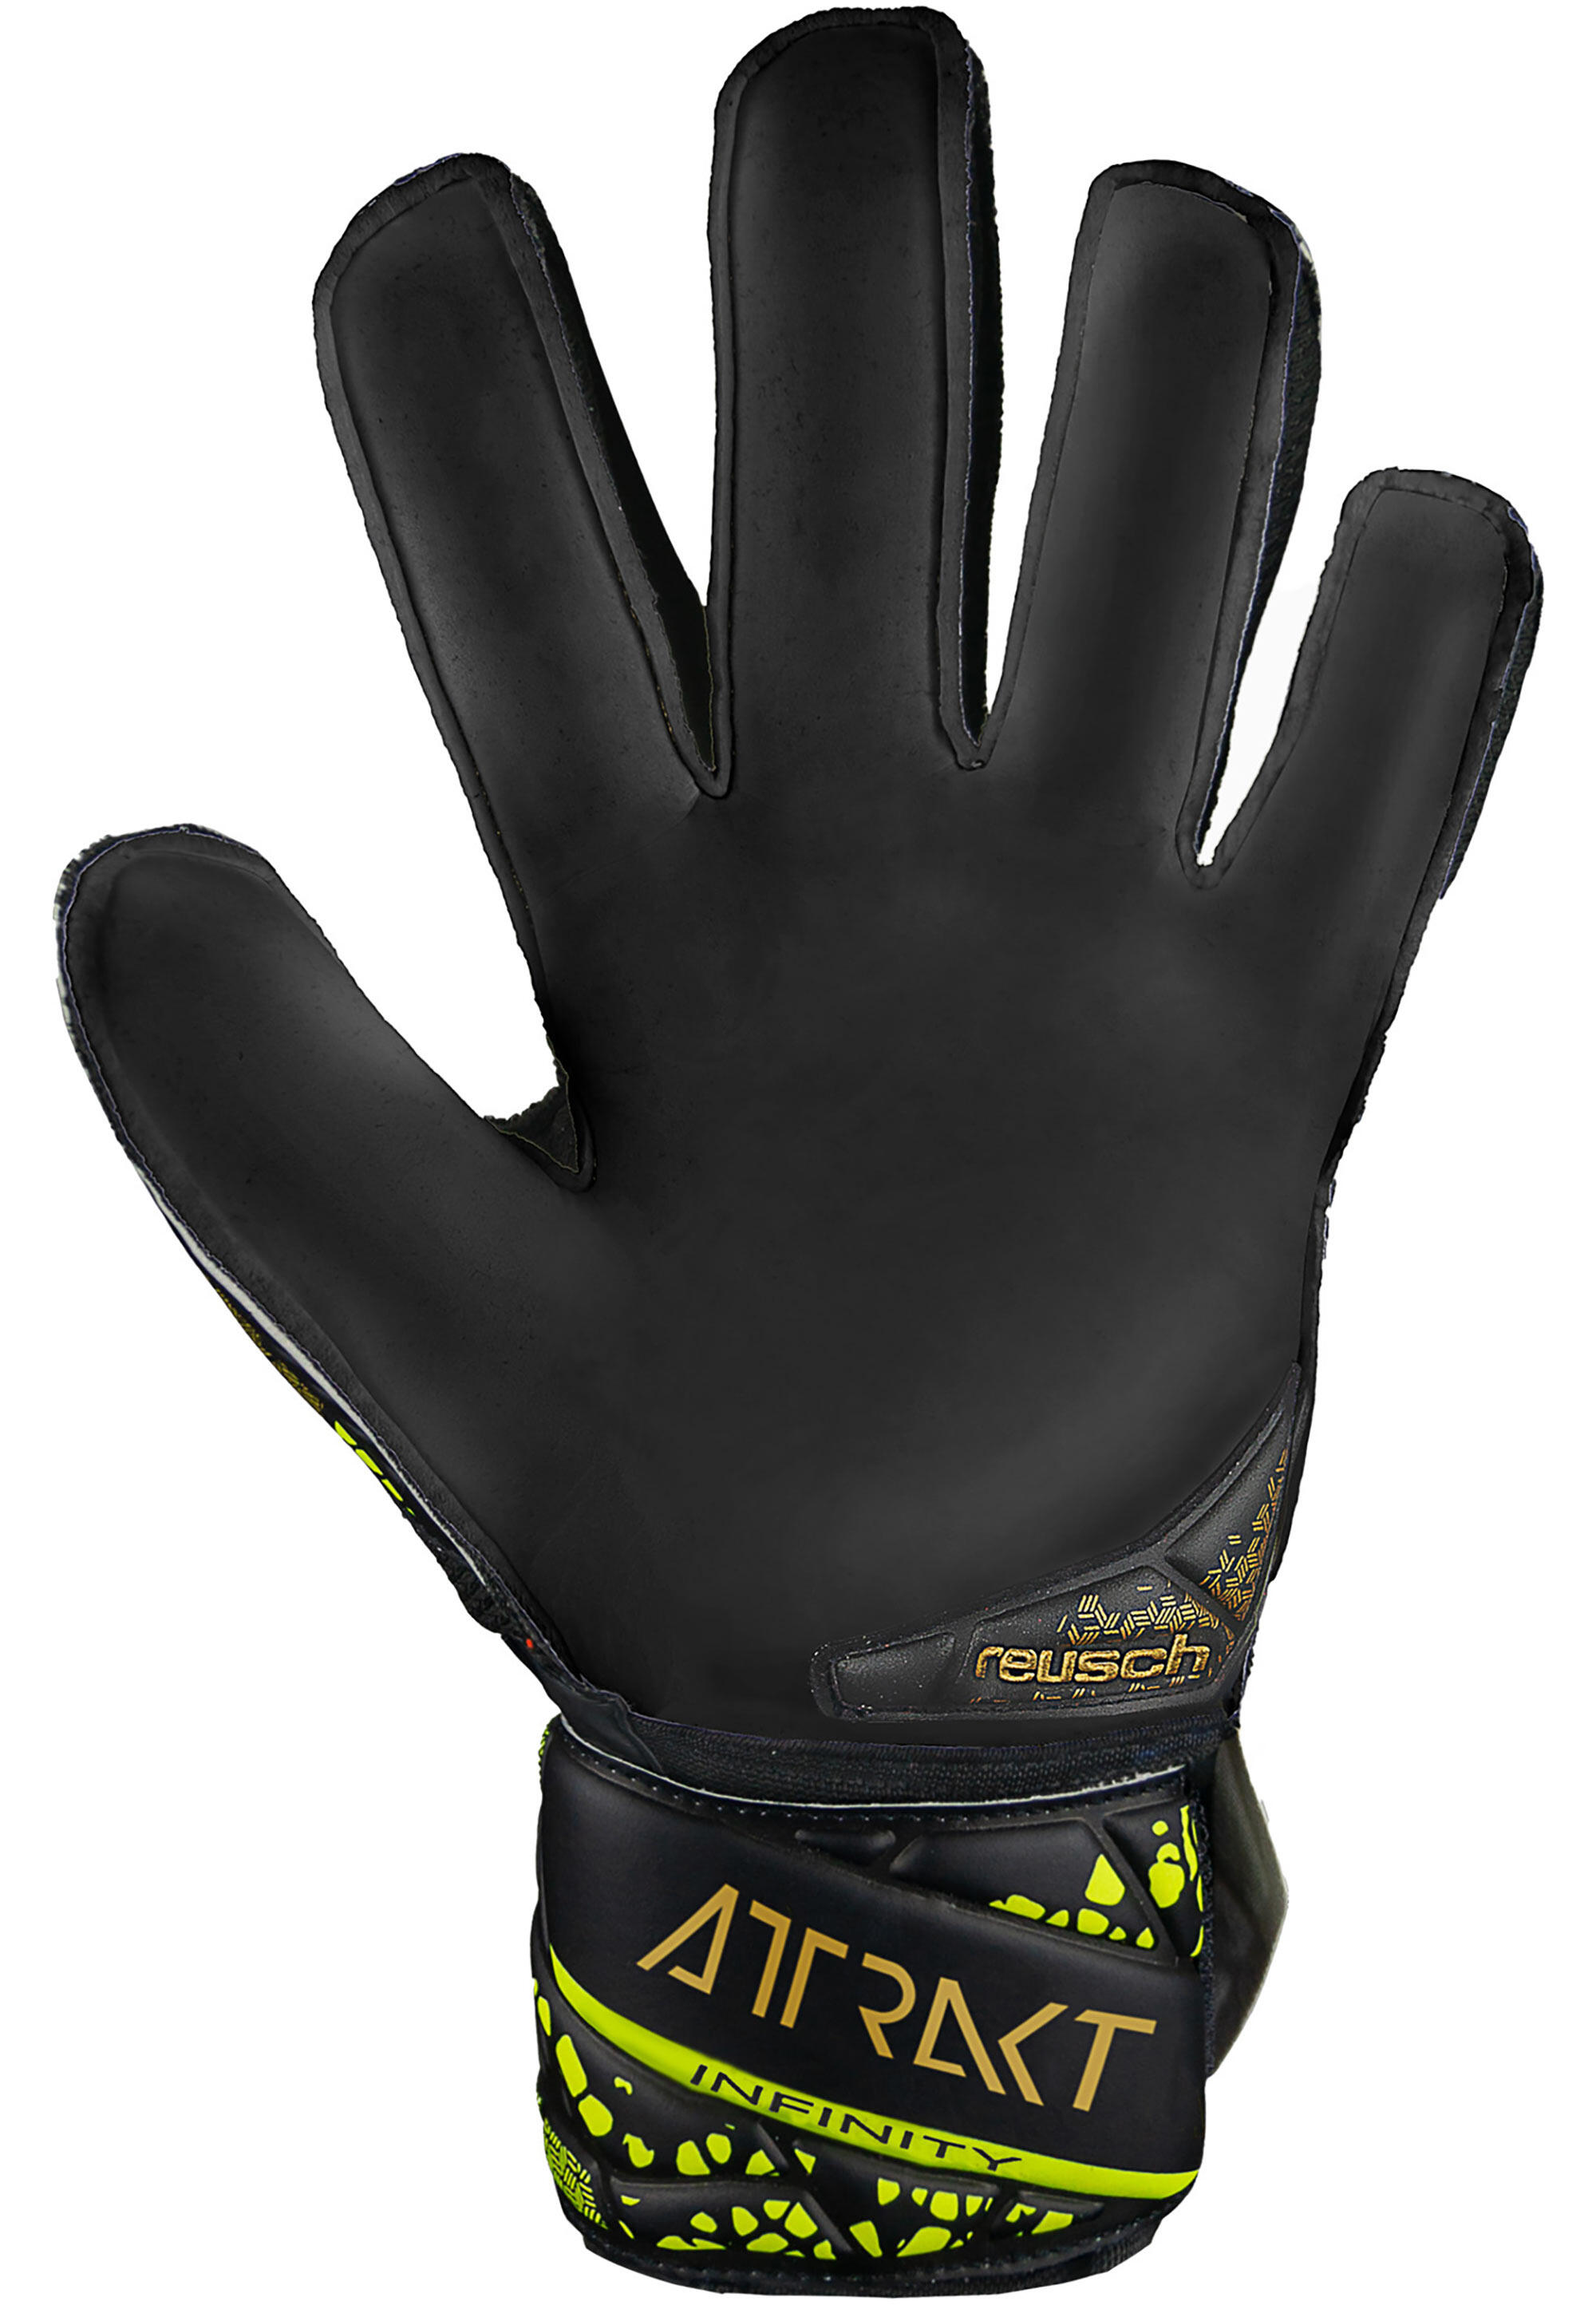 Reusch Attrakt Infinity Finger Support Junior Goalkeeper Gloves 4/7